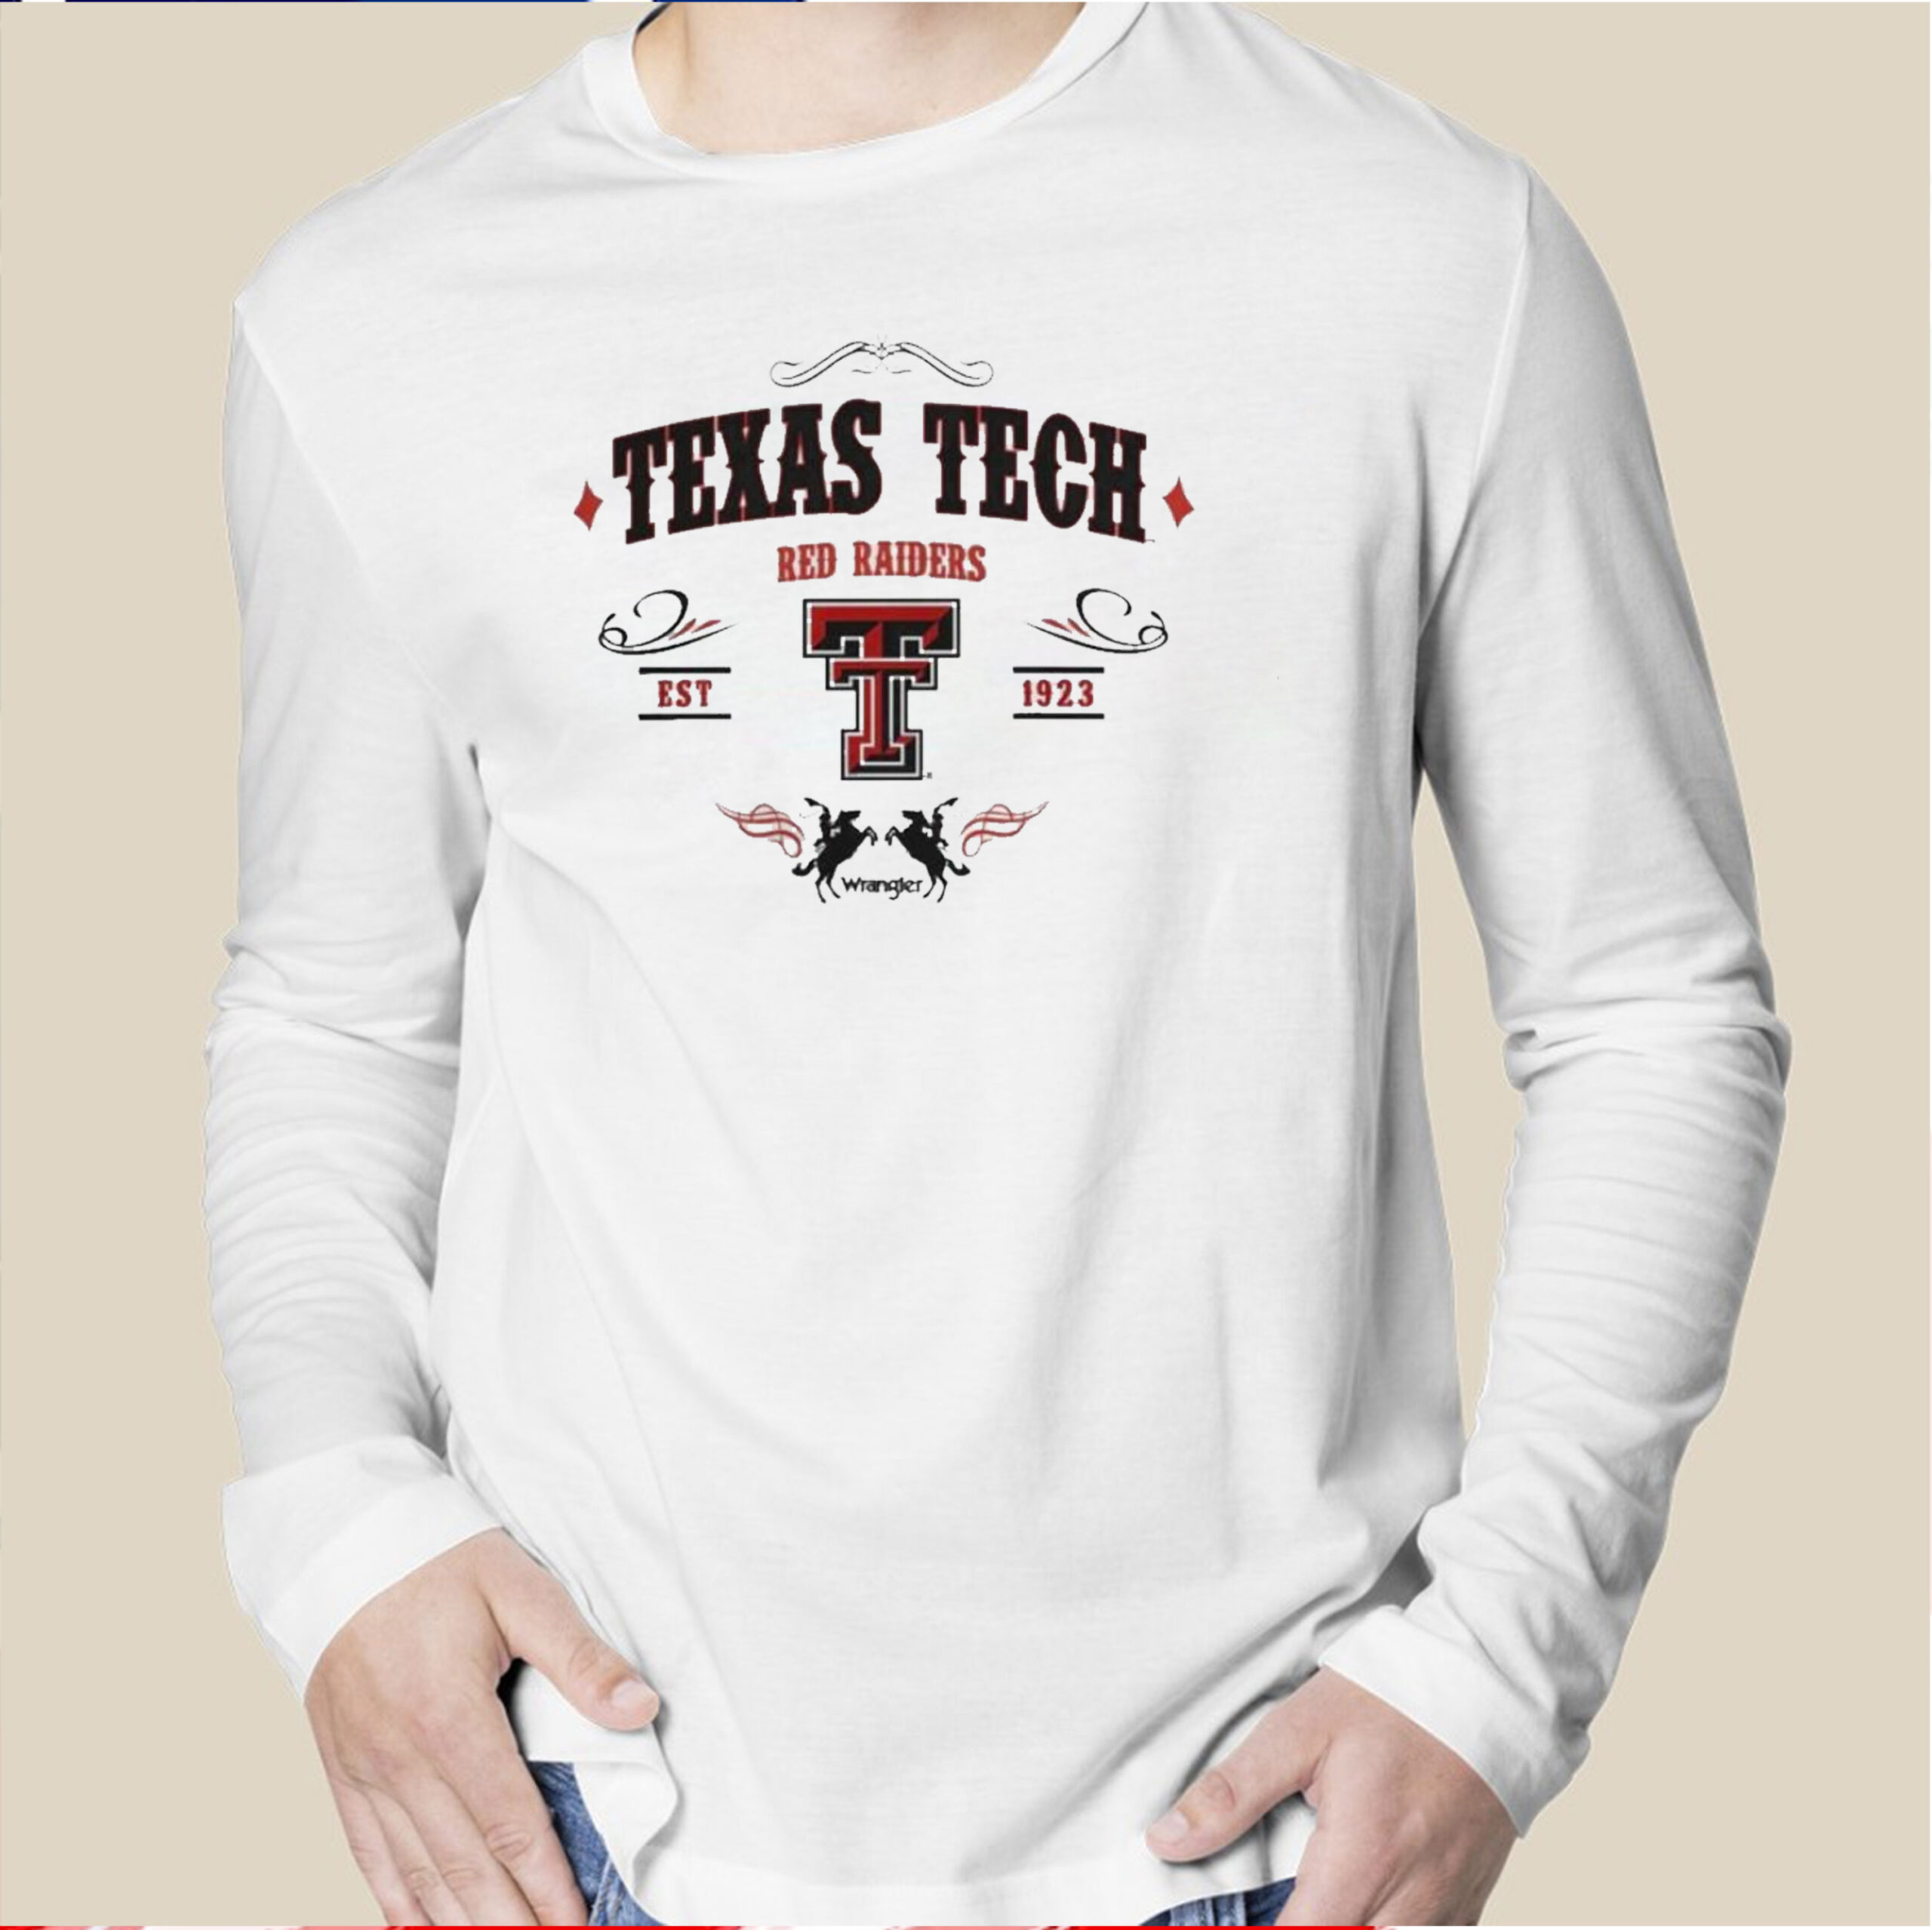 Texas Tech University Red Raiders TShirt